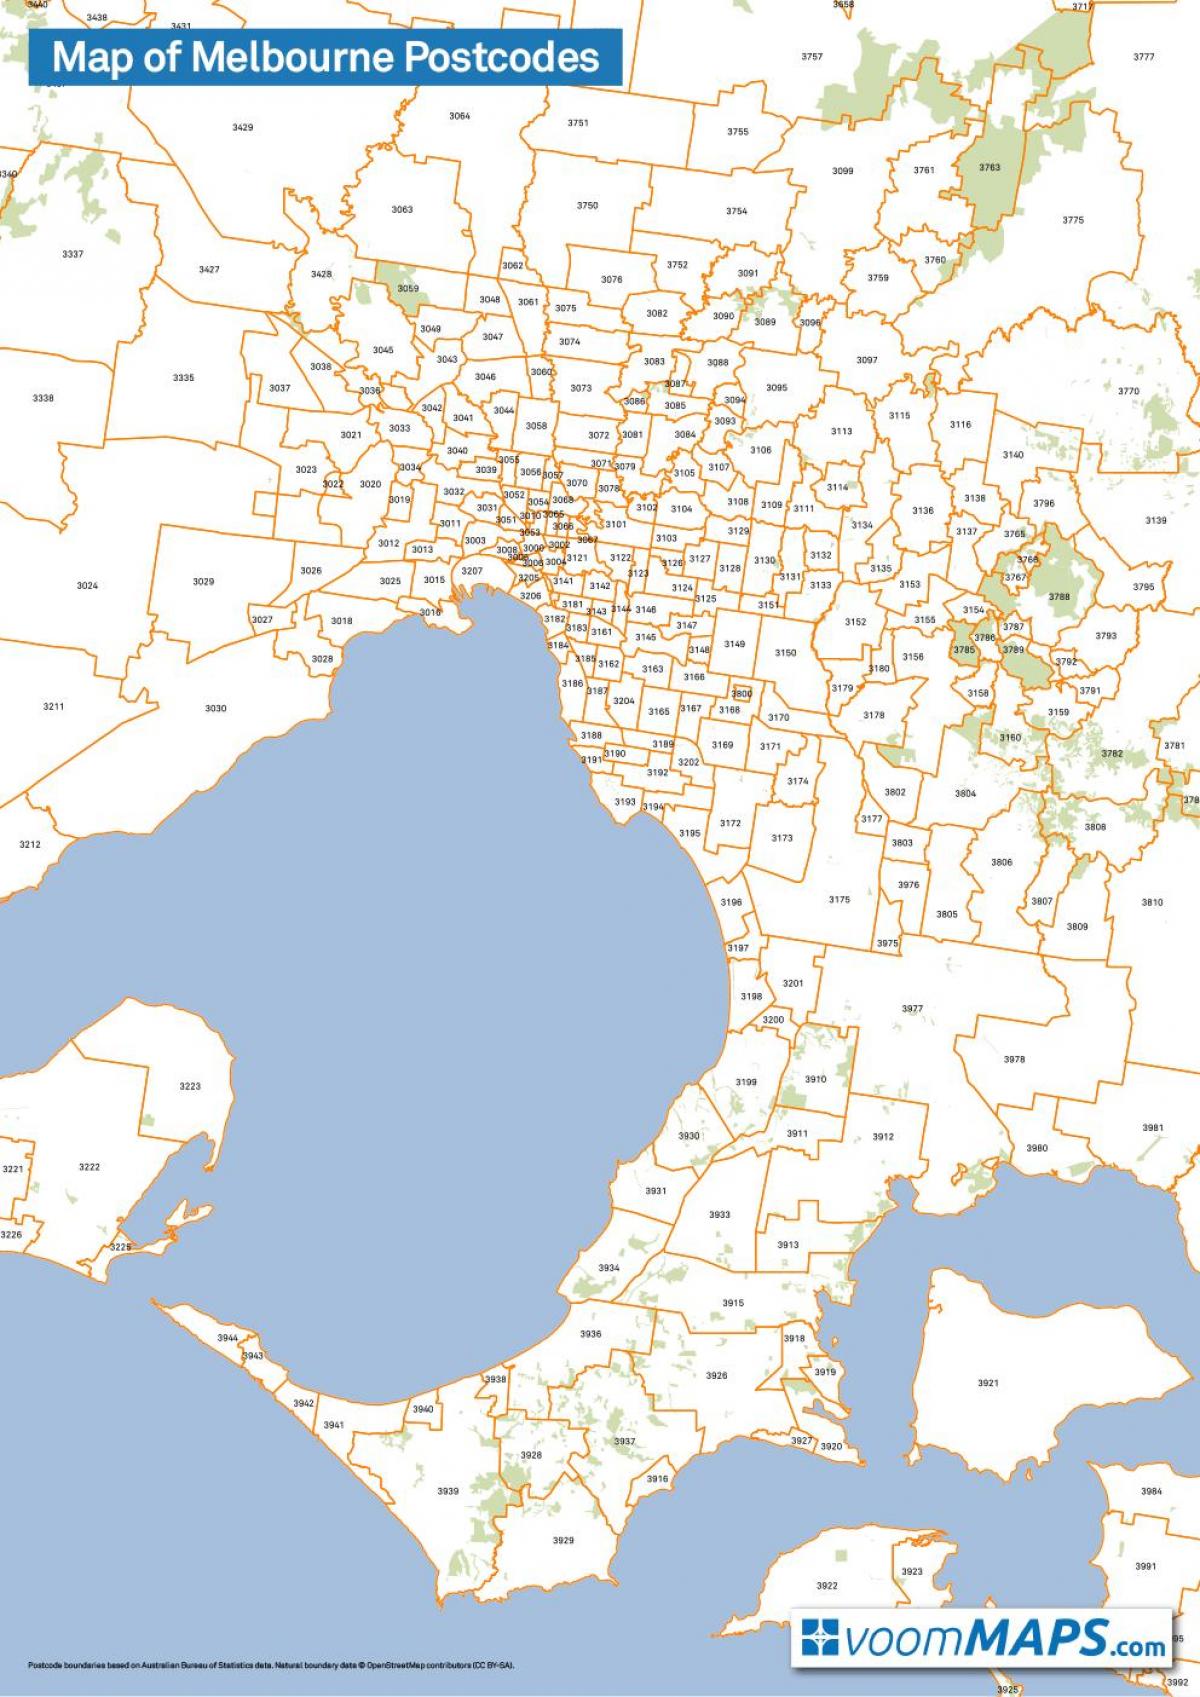 kat jeyografik nan Melbourne postcodes